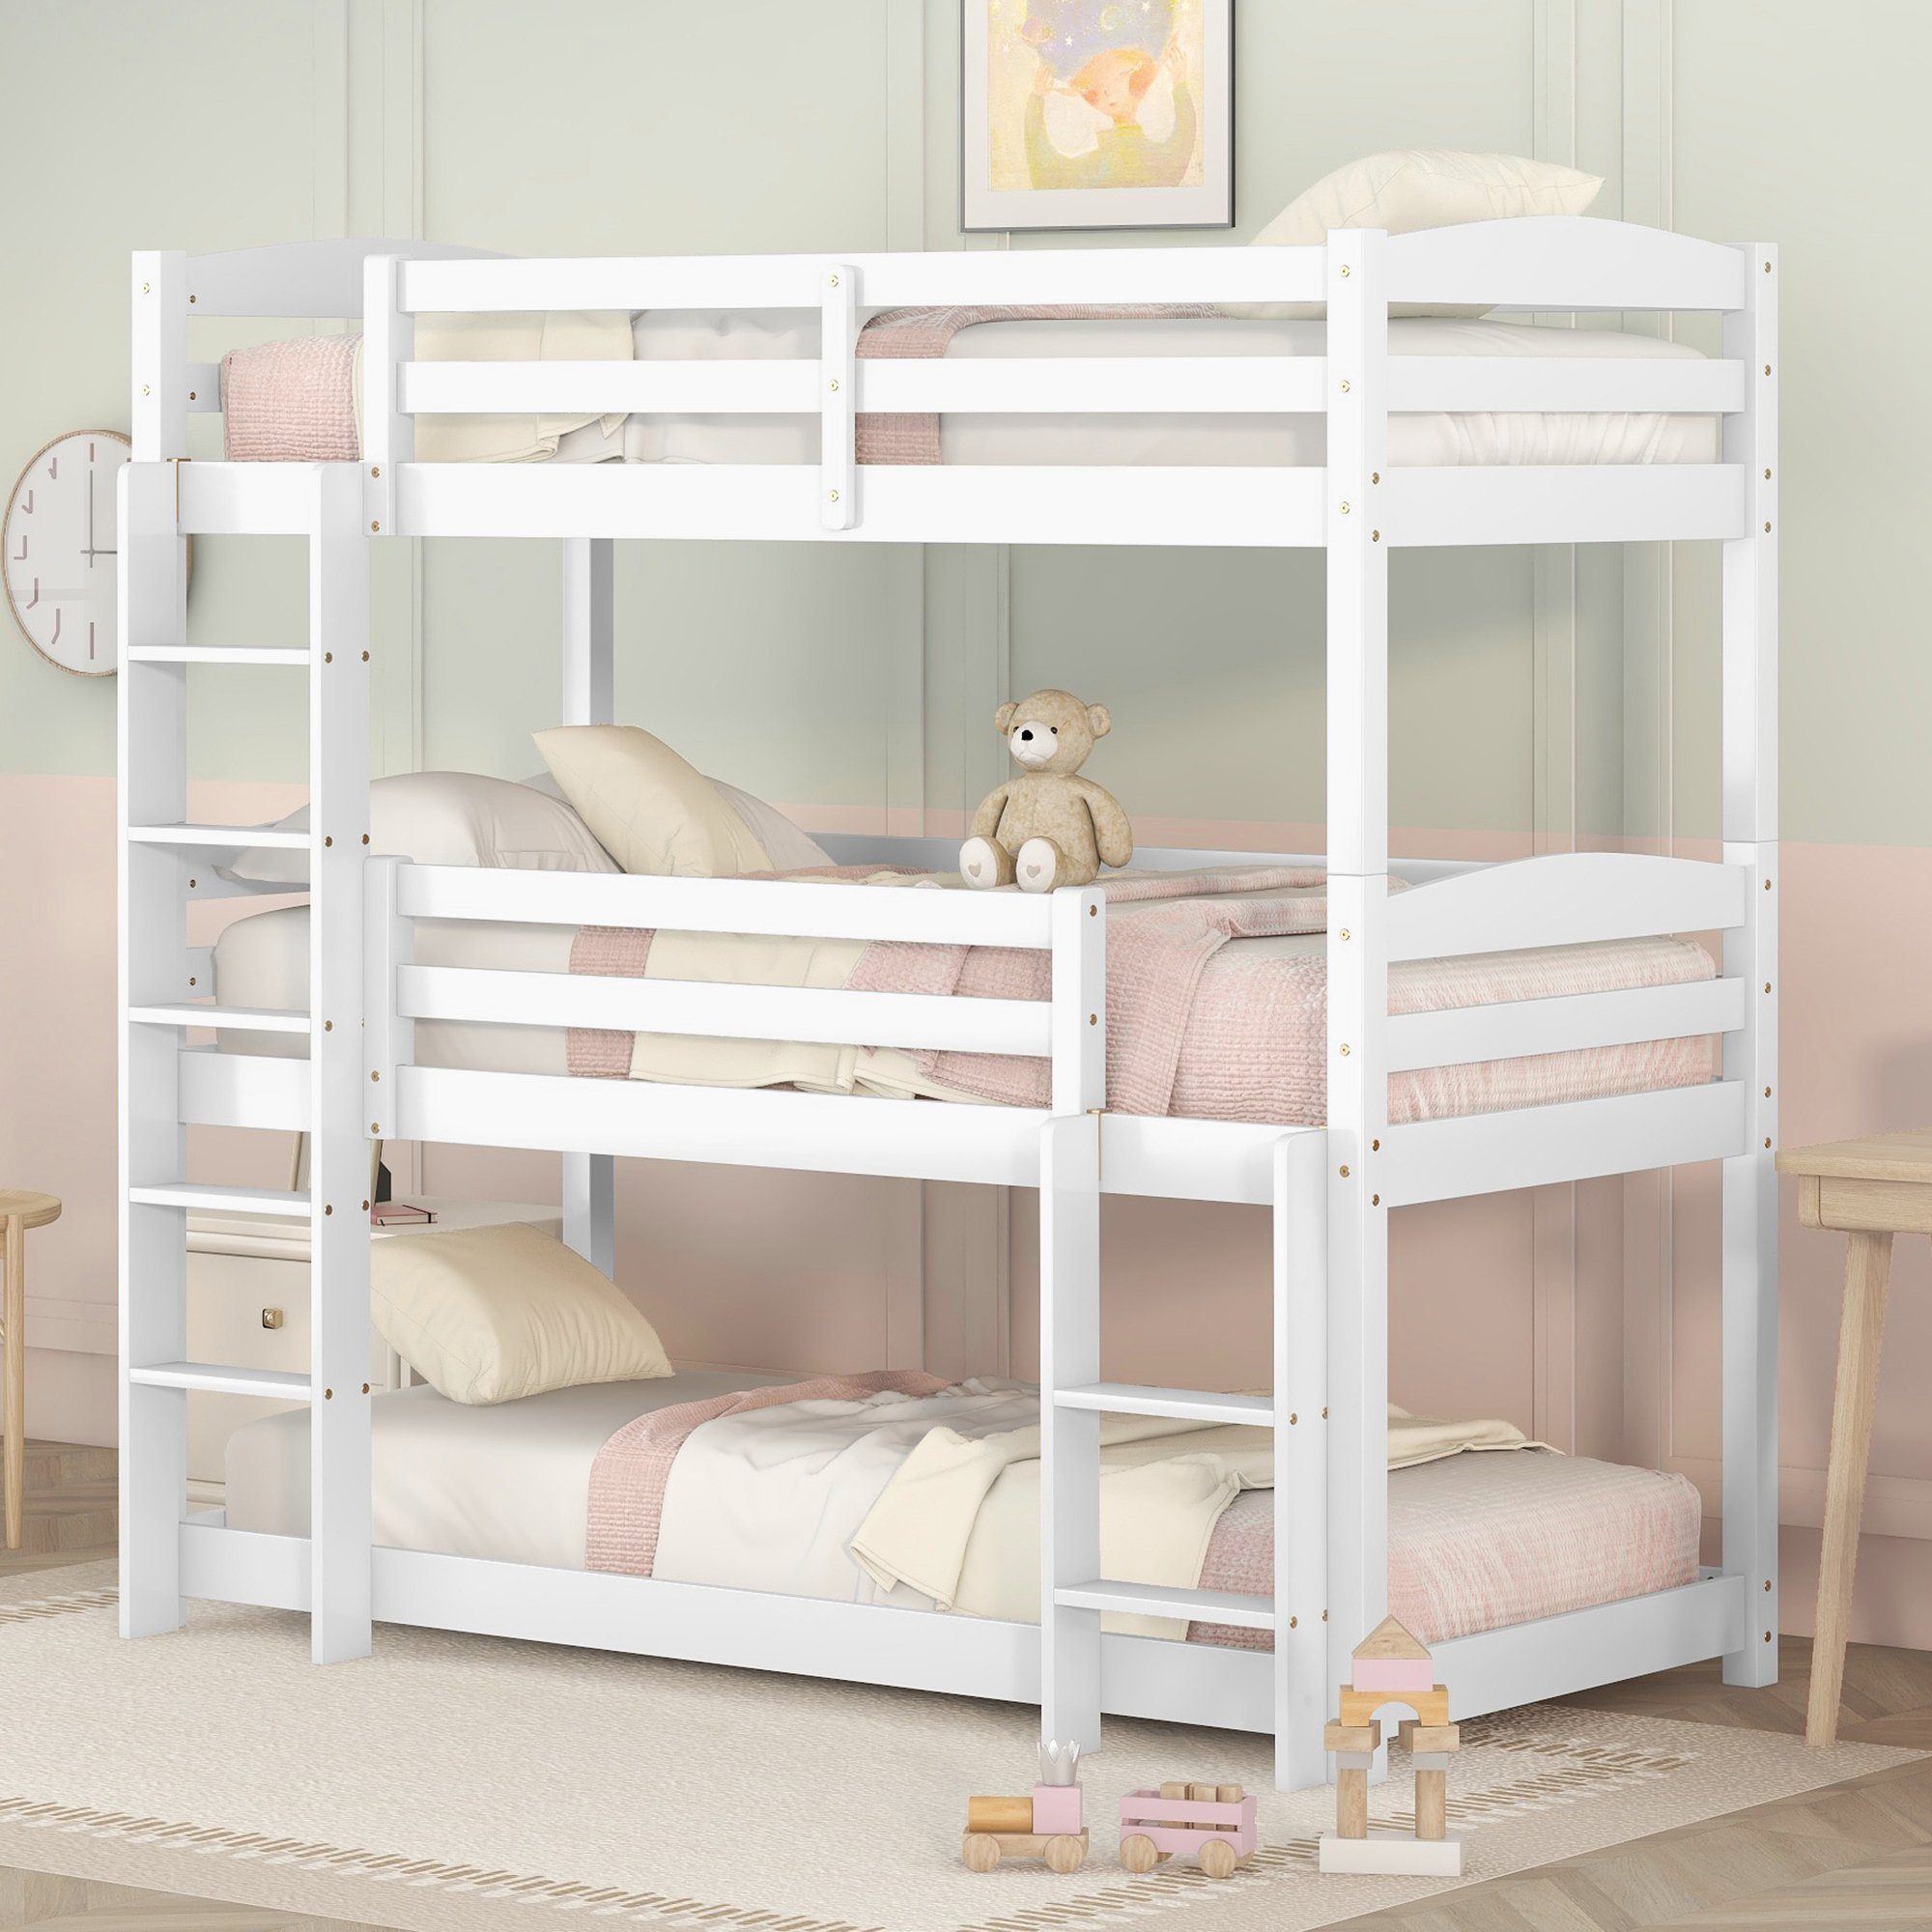 OKWISH Bett Kinderbett, Single-Size-Holz-Dreier-Etagenbett für Kinder (90*200cm), Ohne Matratze Weiß